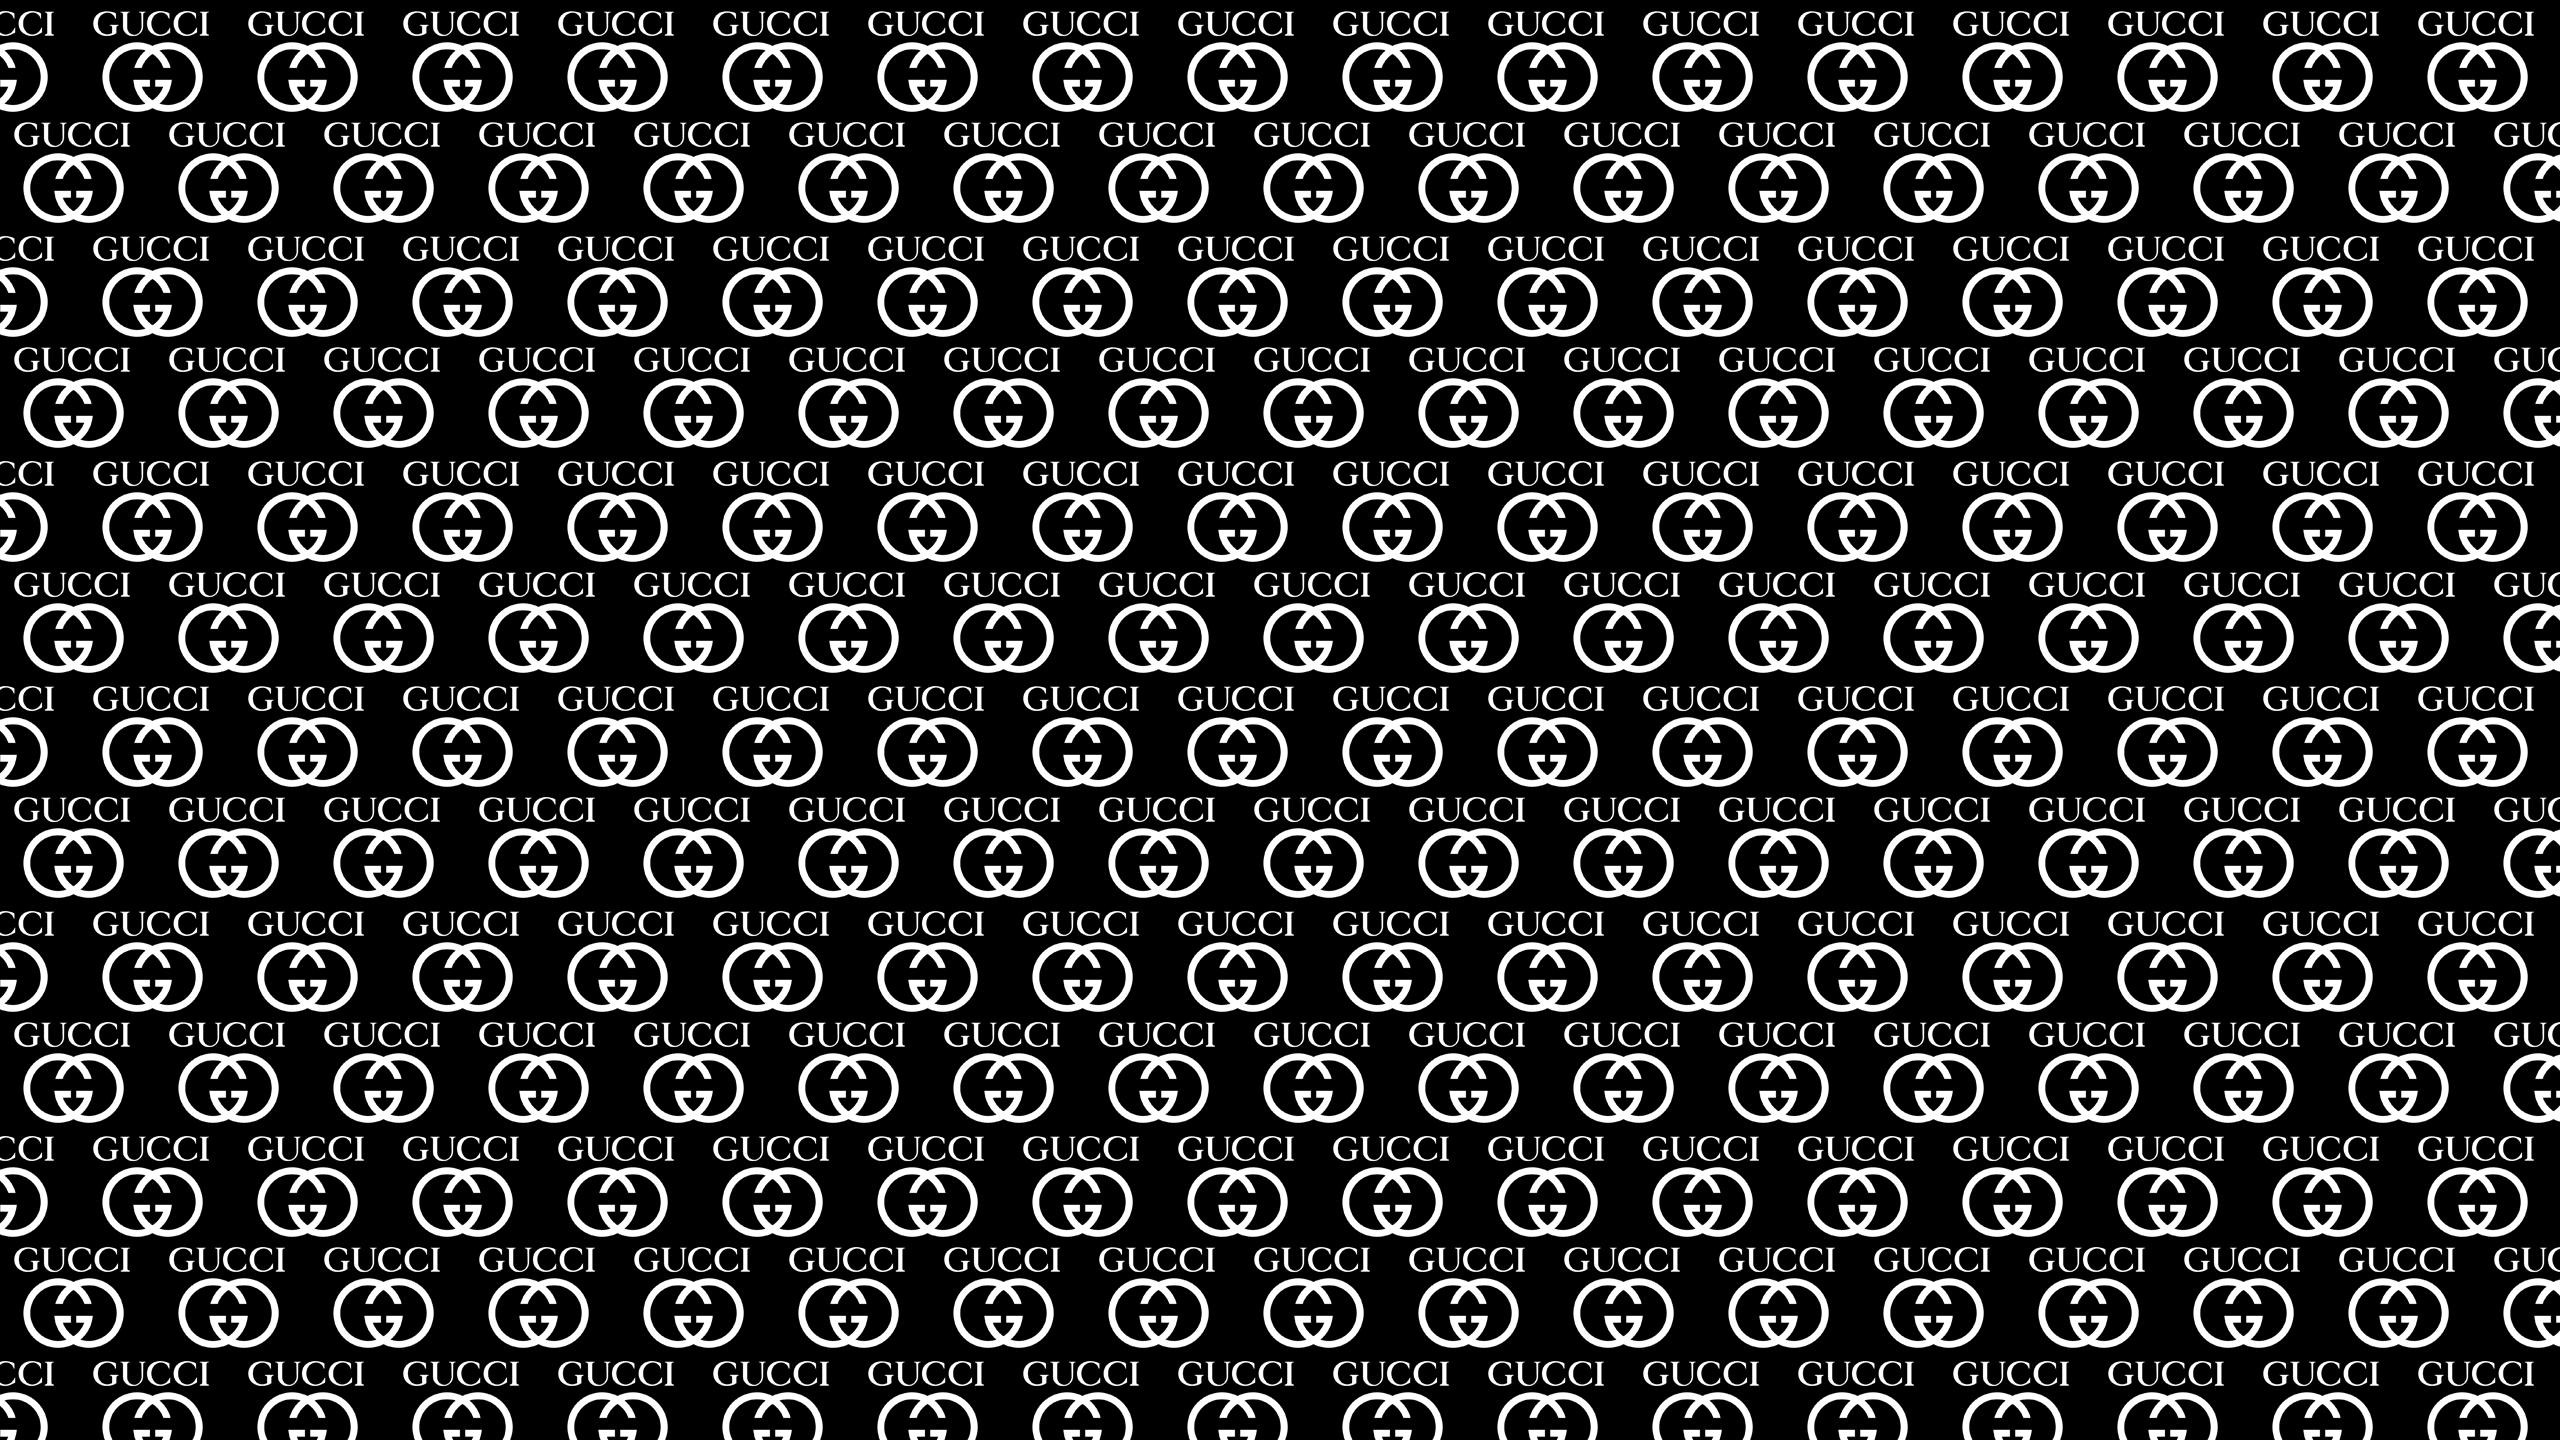 2560 x 1440 · png - Gucci Wallpapers HD | PixelsTalk